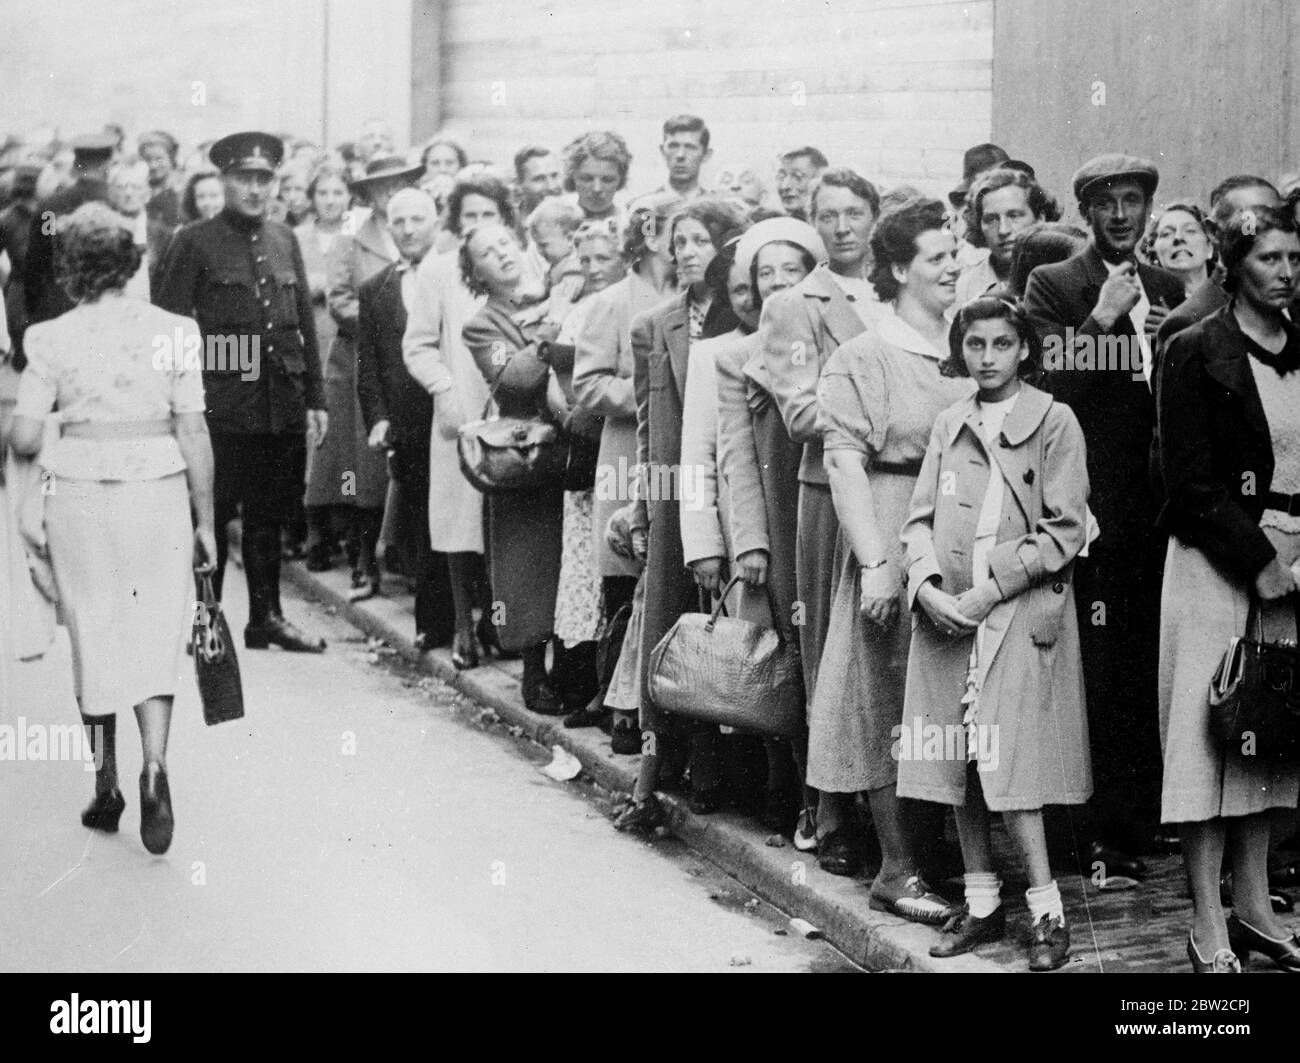 Las esposas de soldados convocadas en virtud de la orden de movilización holandesa emitida durante la crisis, se pusieron en cola en Amsterdam para obtener su subsidio de separación. 30 de agosto de 1939 Foto de stock